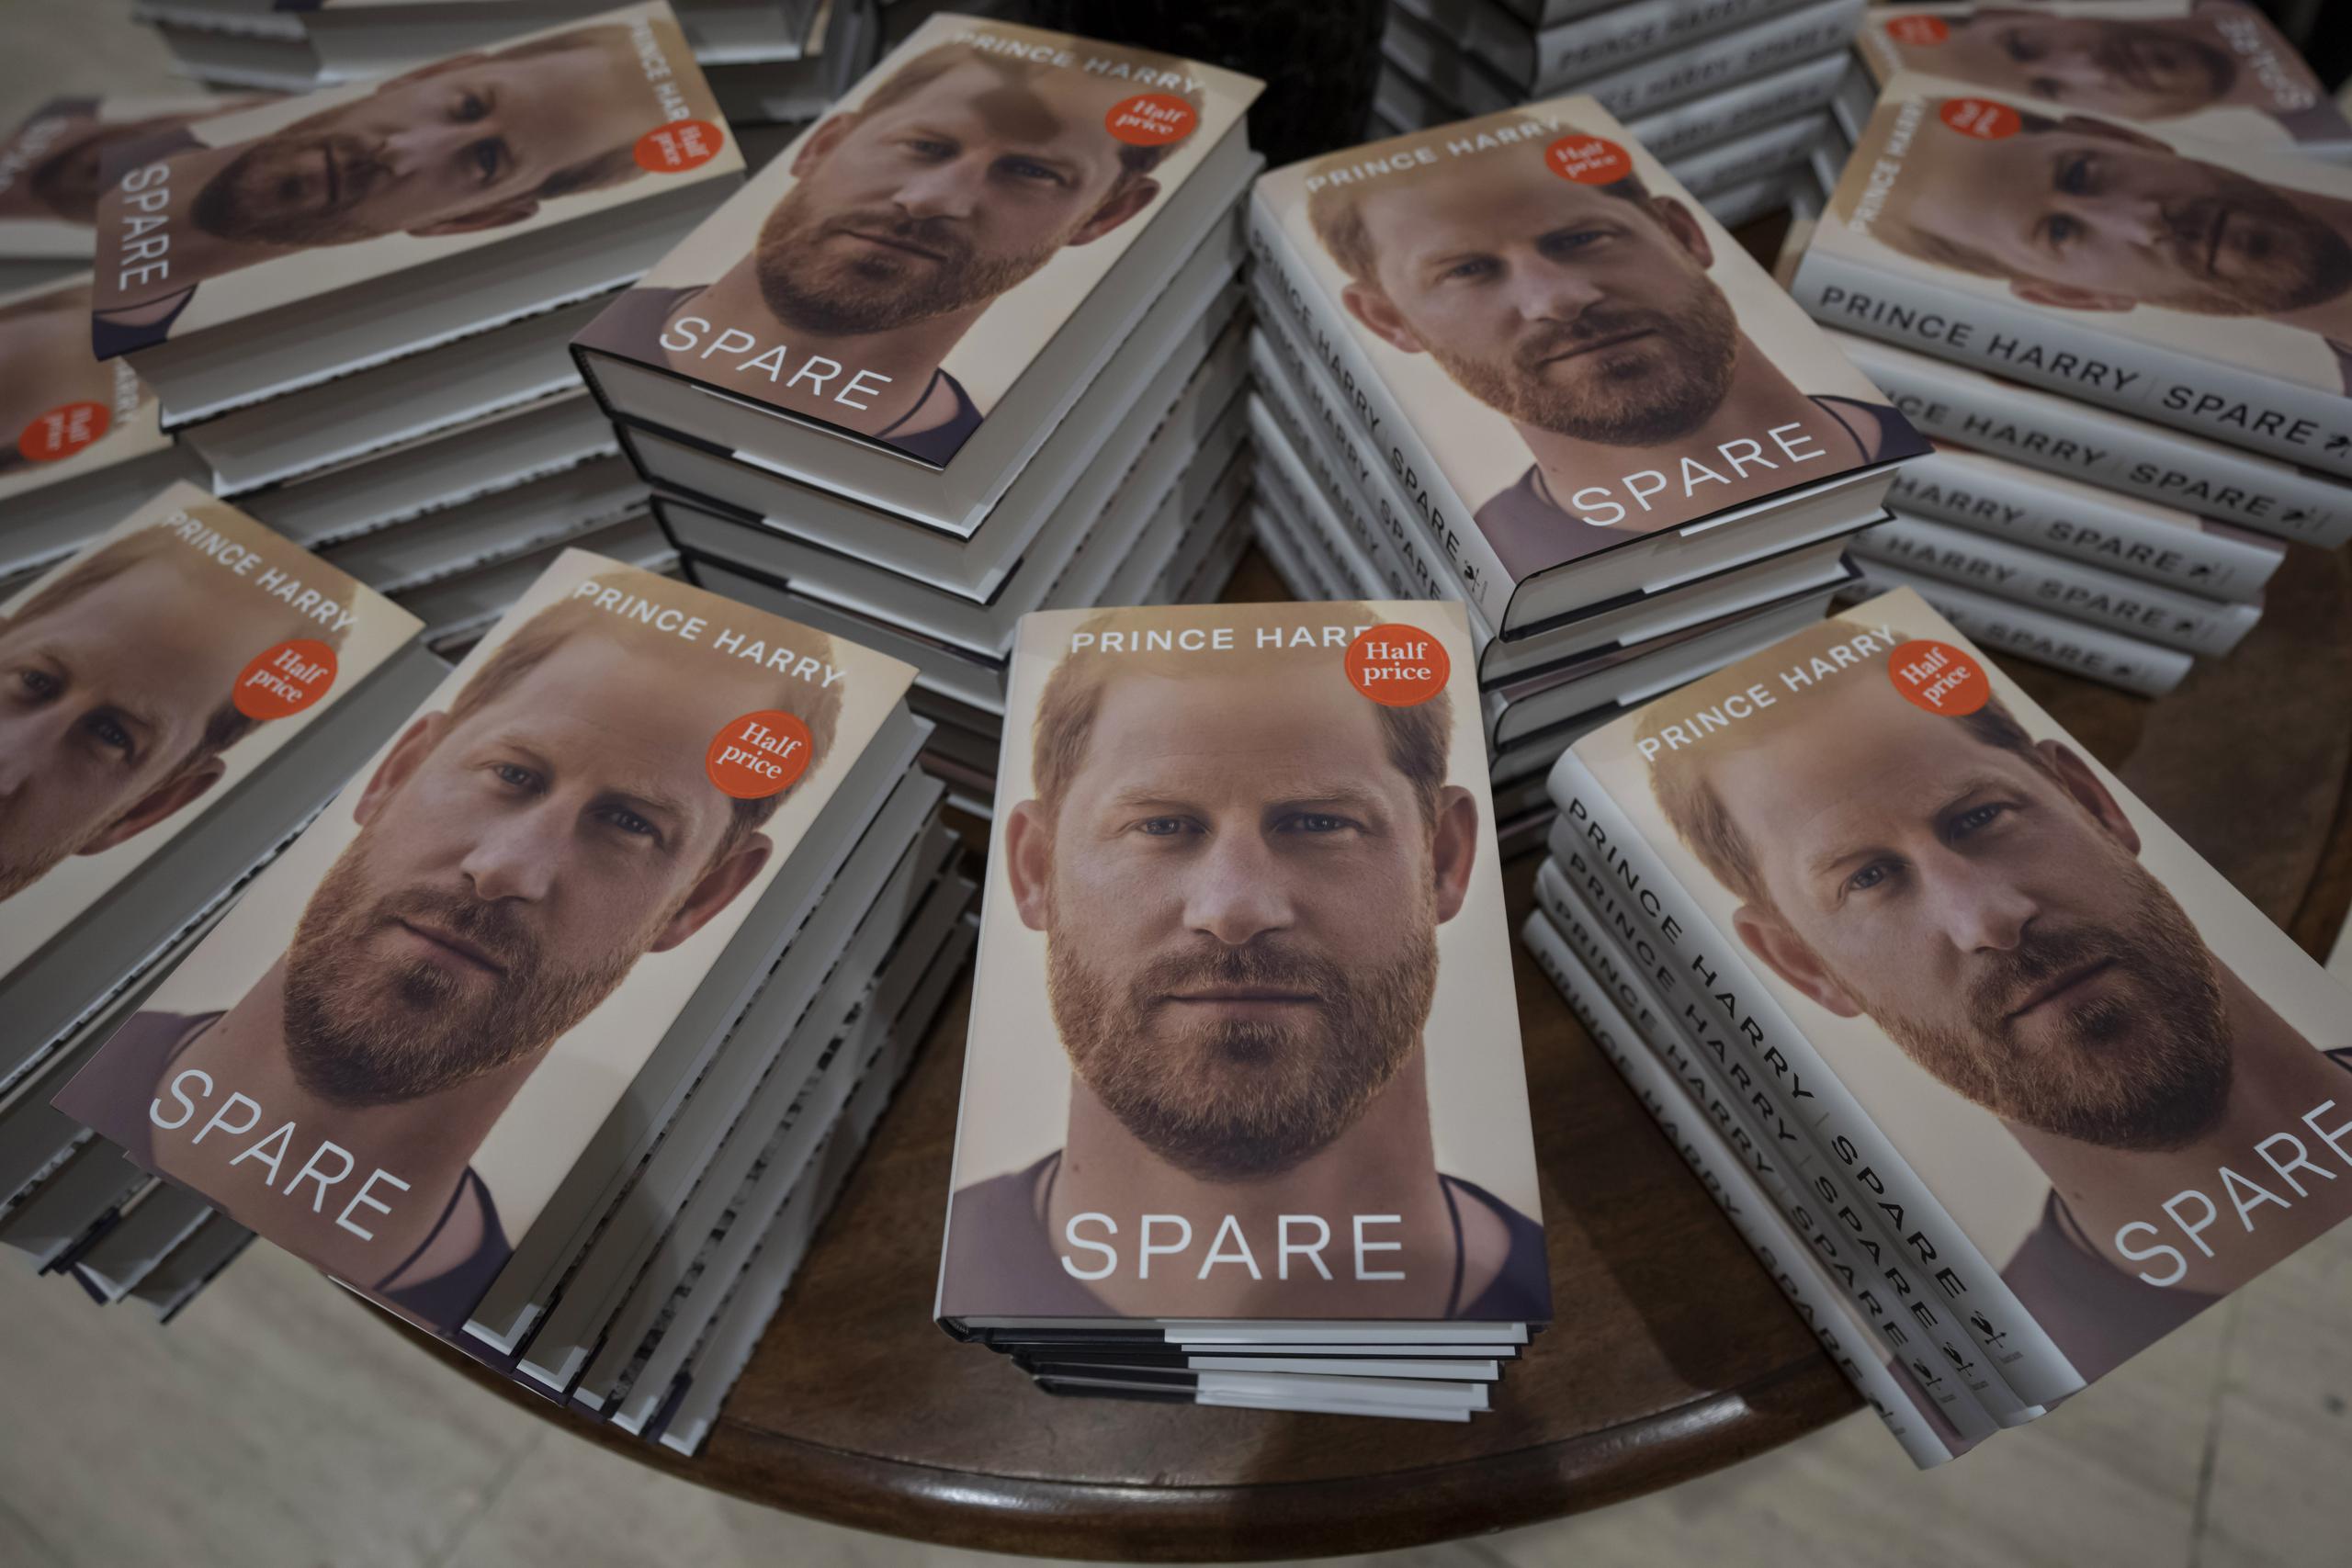 Copias del nuevo libro del príncipe Enrique, "Spare", exhibidas en una librería en Londres.